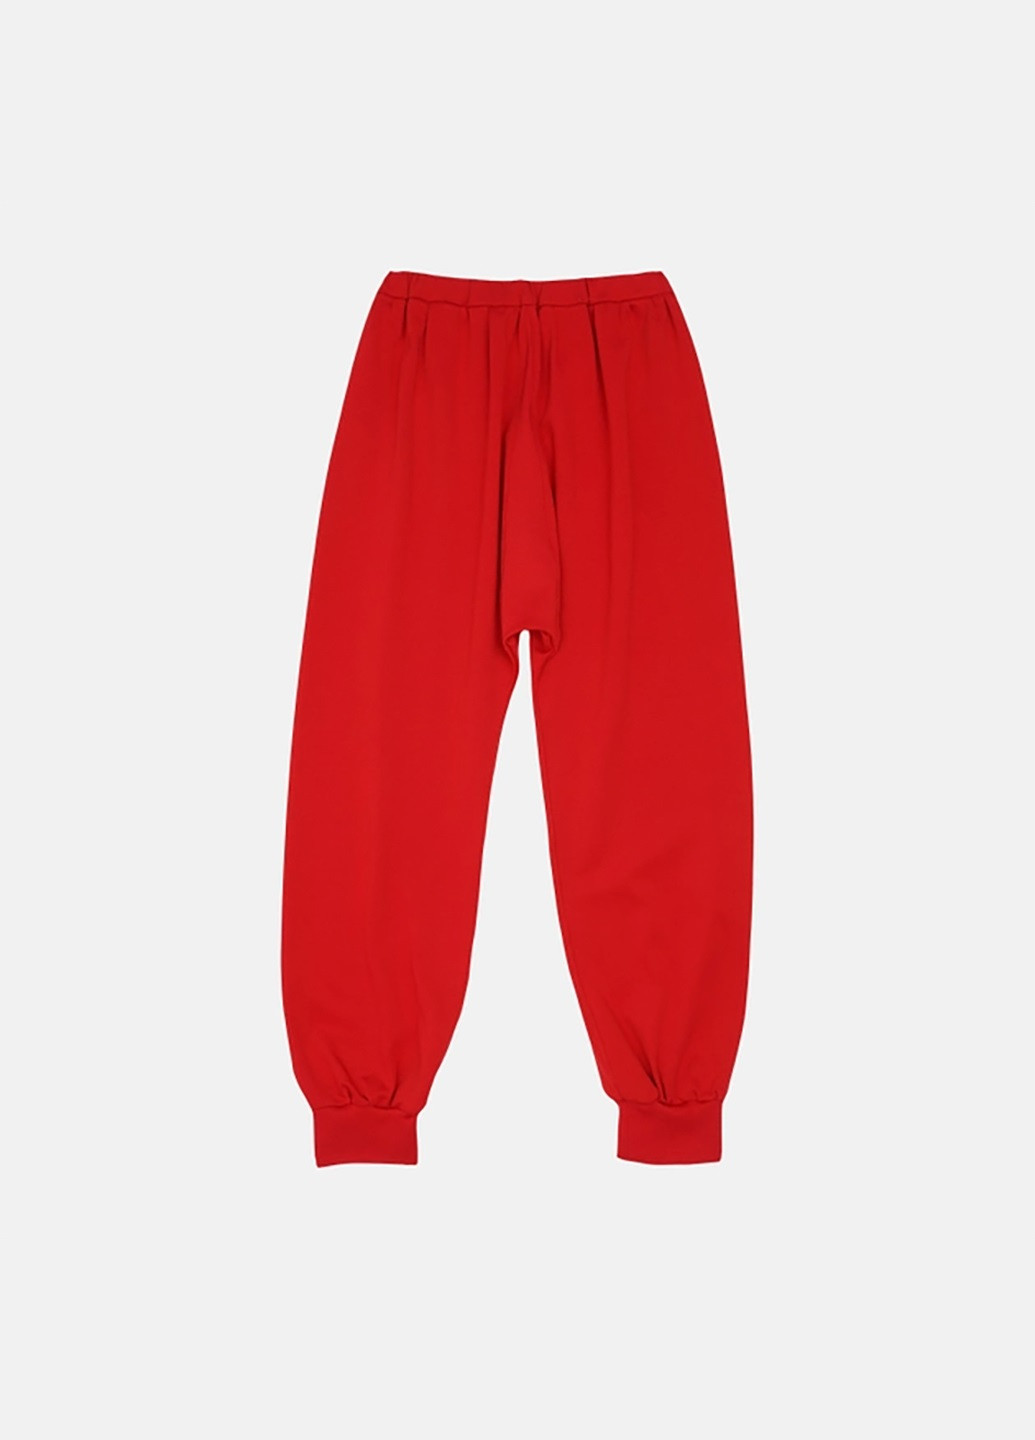 Красные кэжуал демисезонные джоггеры брюки Matilda